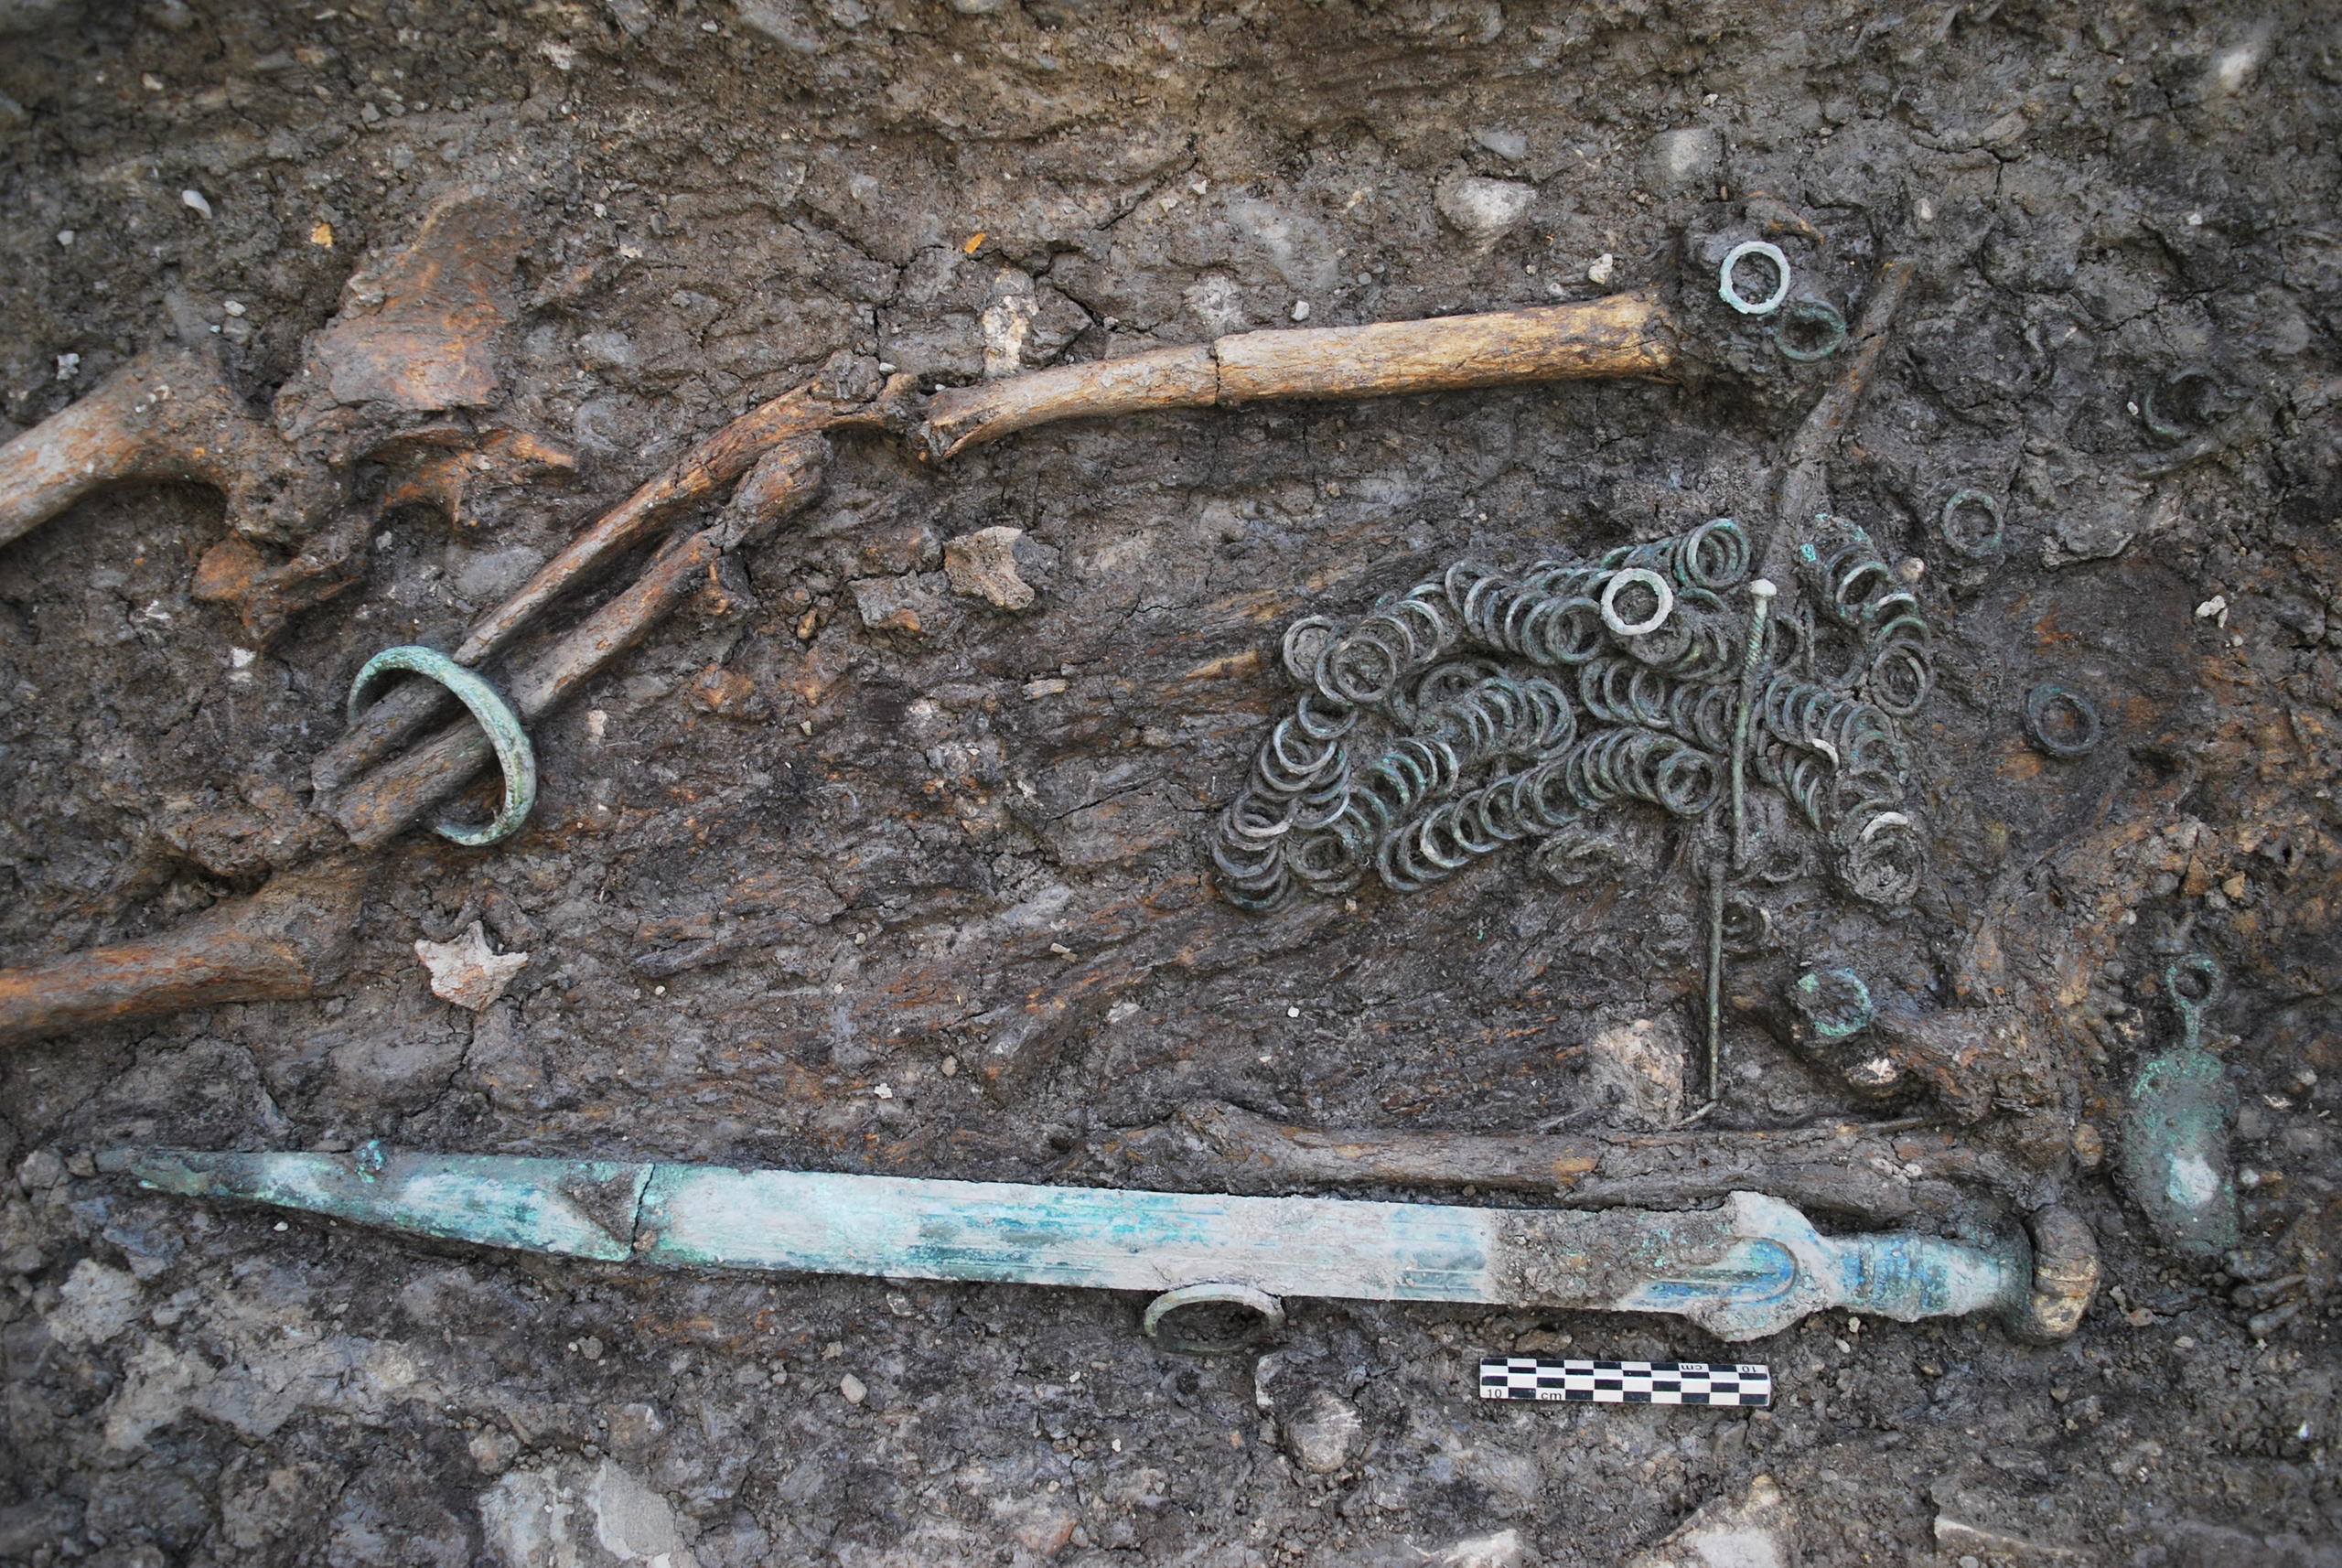 ヴァレー州の工事現場から見つかった青銅器時代の遺物